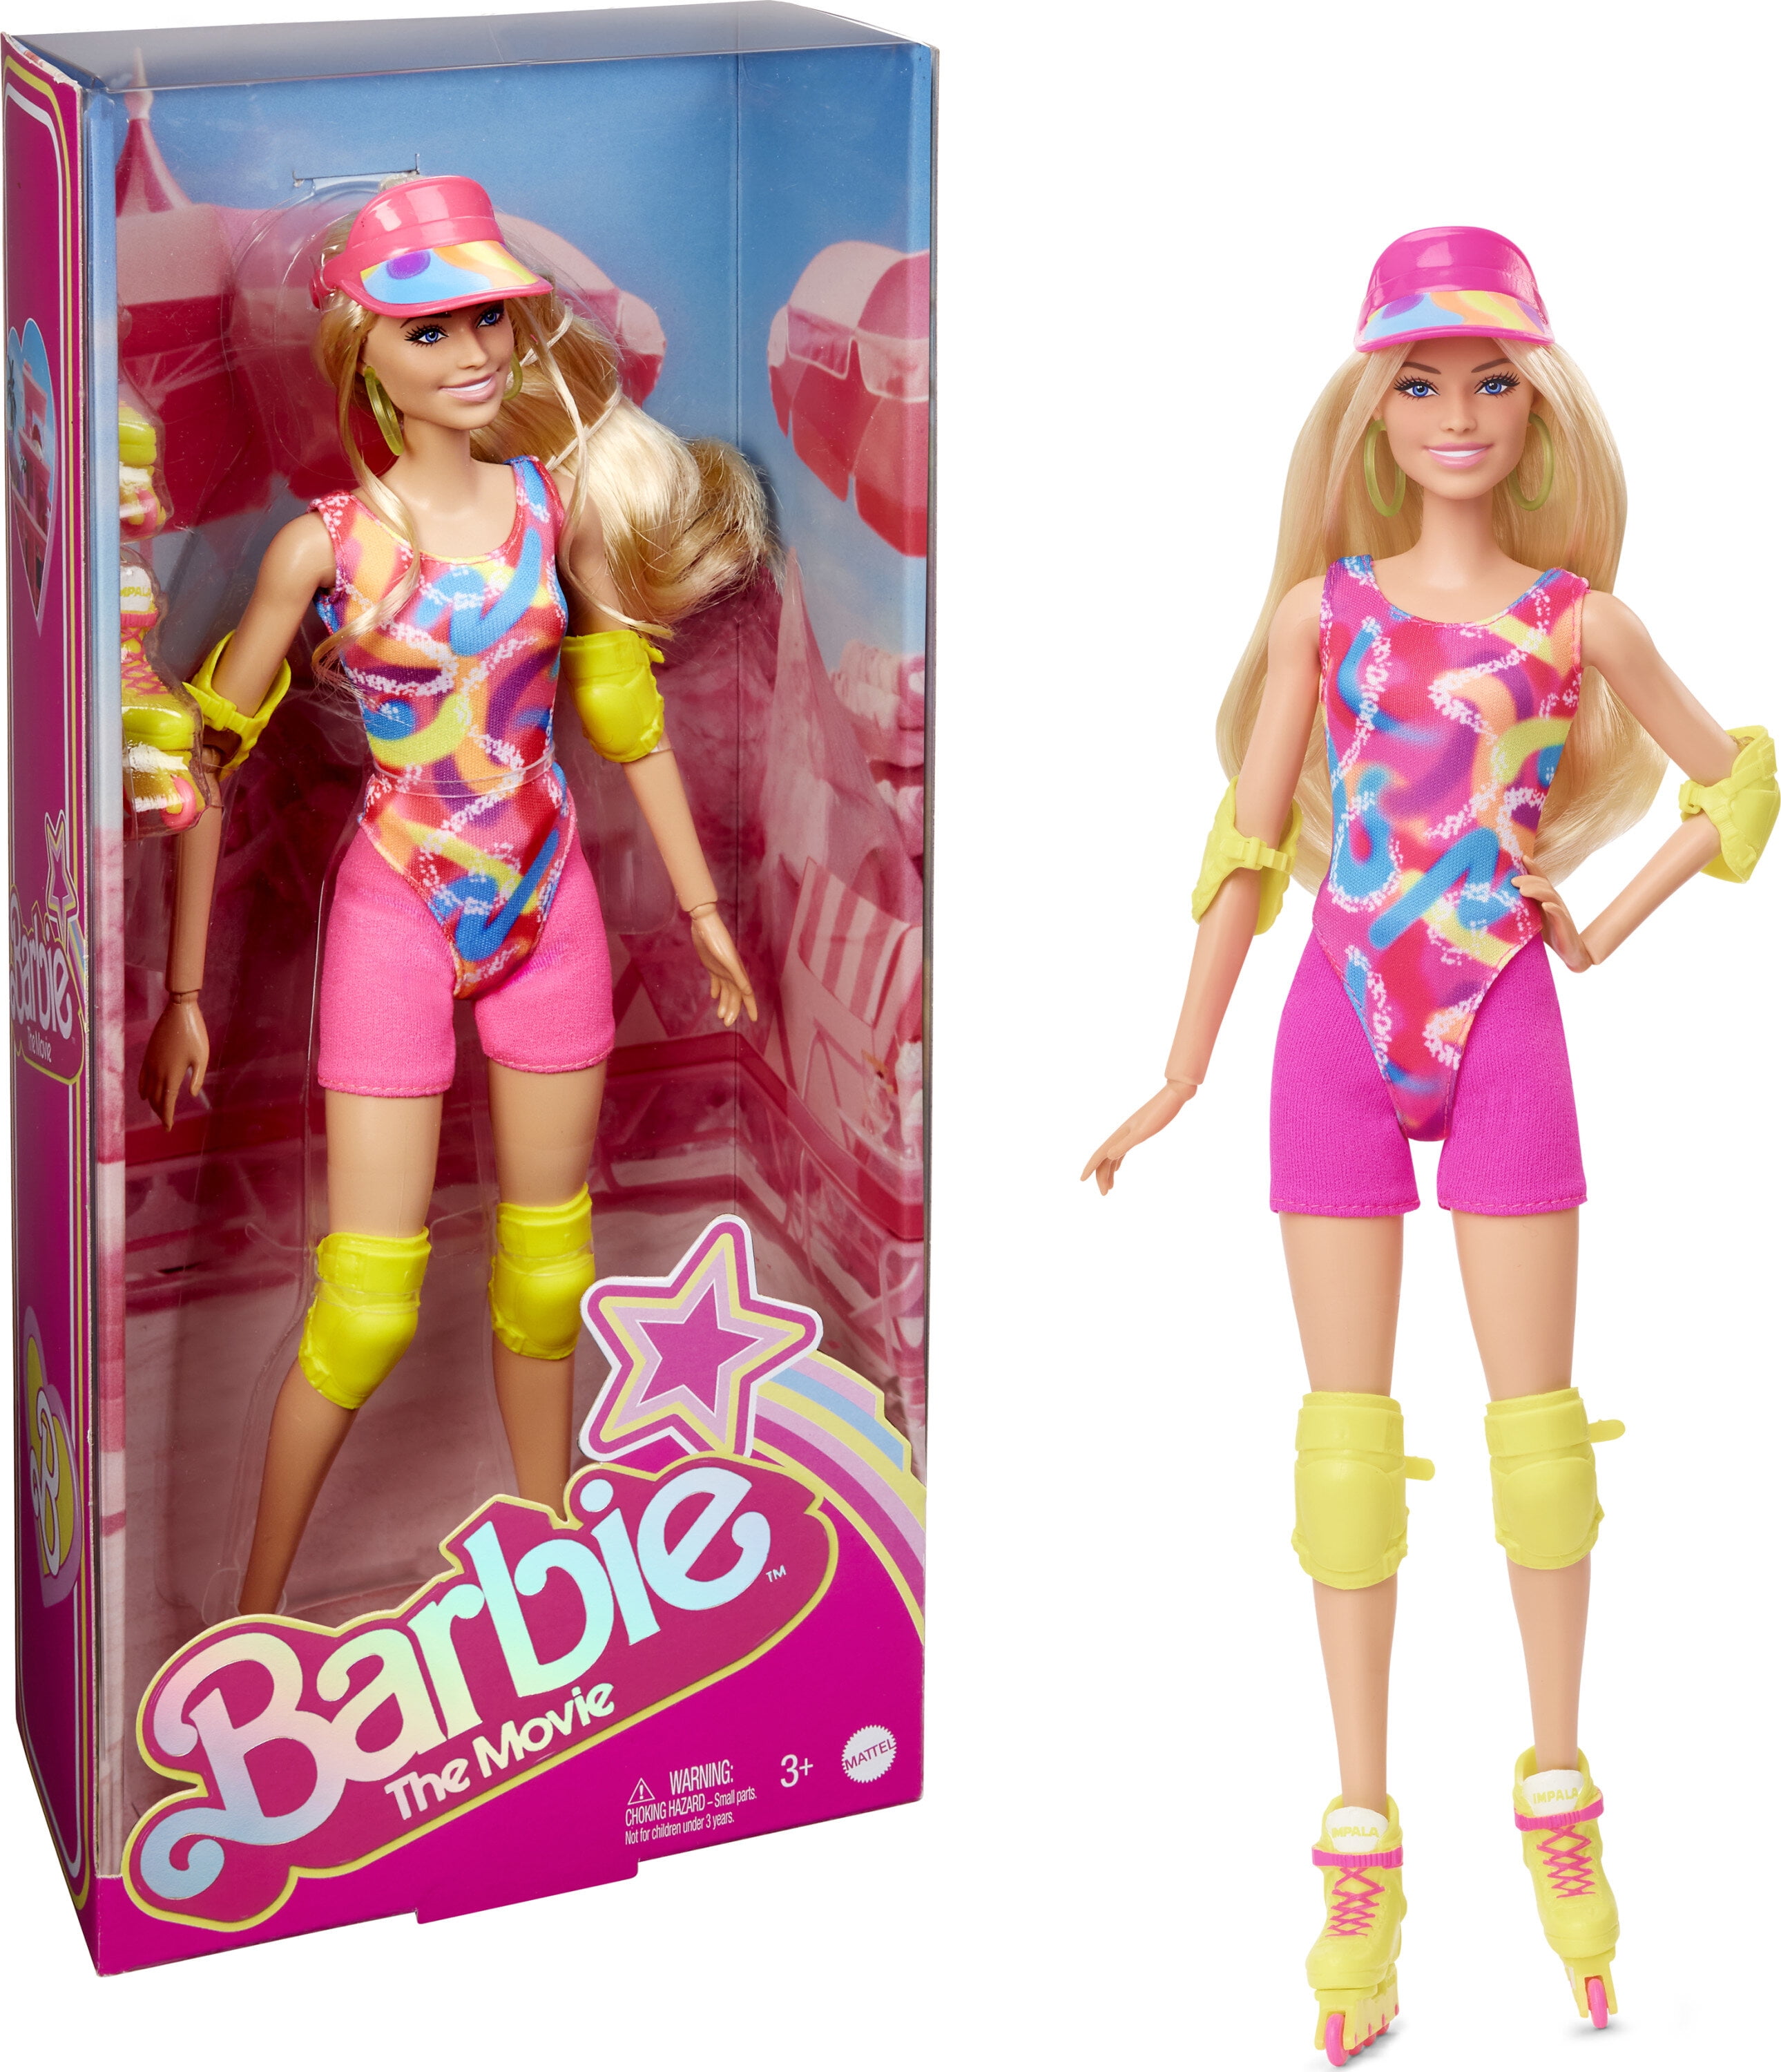 Barbie Máquina de Lavar Roupa com Acessórios - Bang Toys - Boneca Barbie -  Magazine Luiza